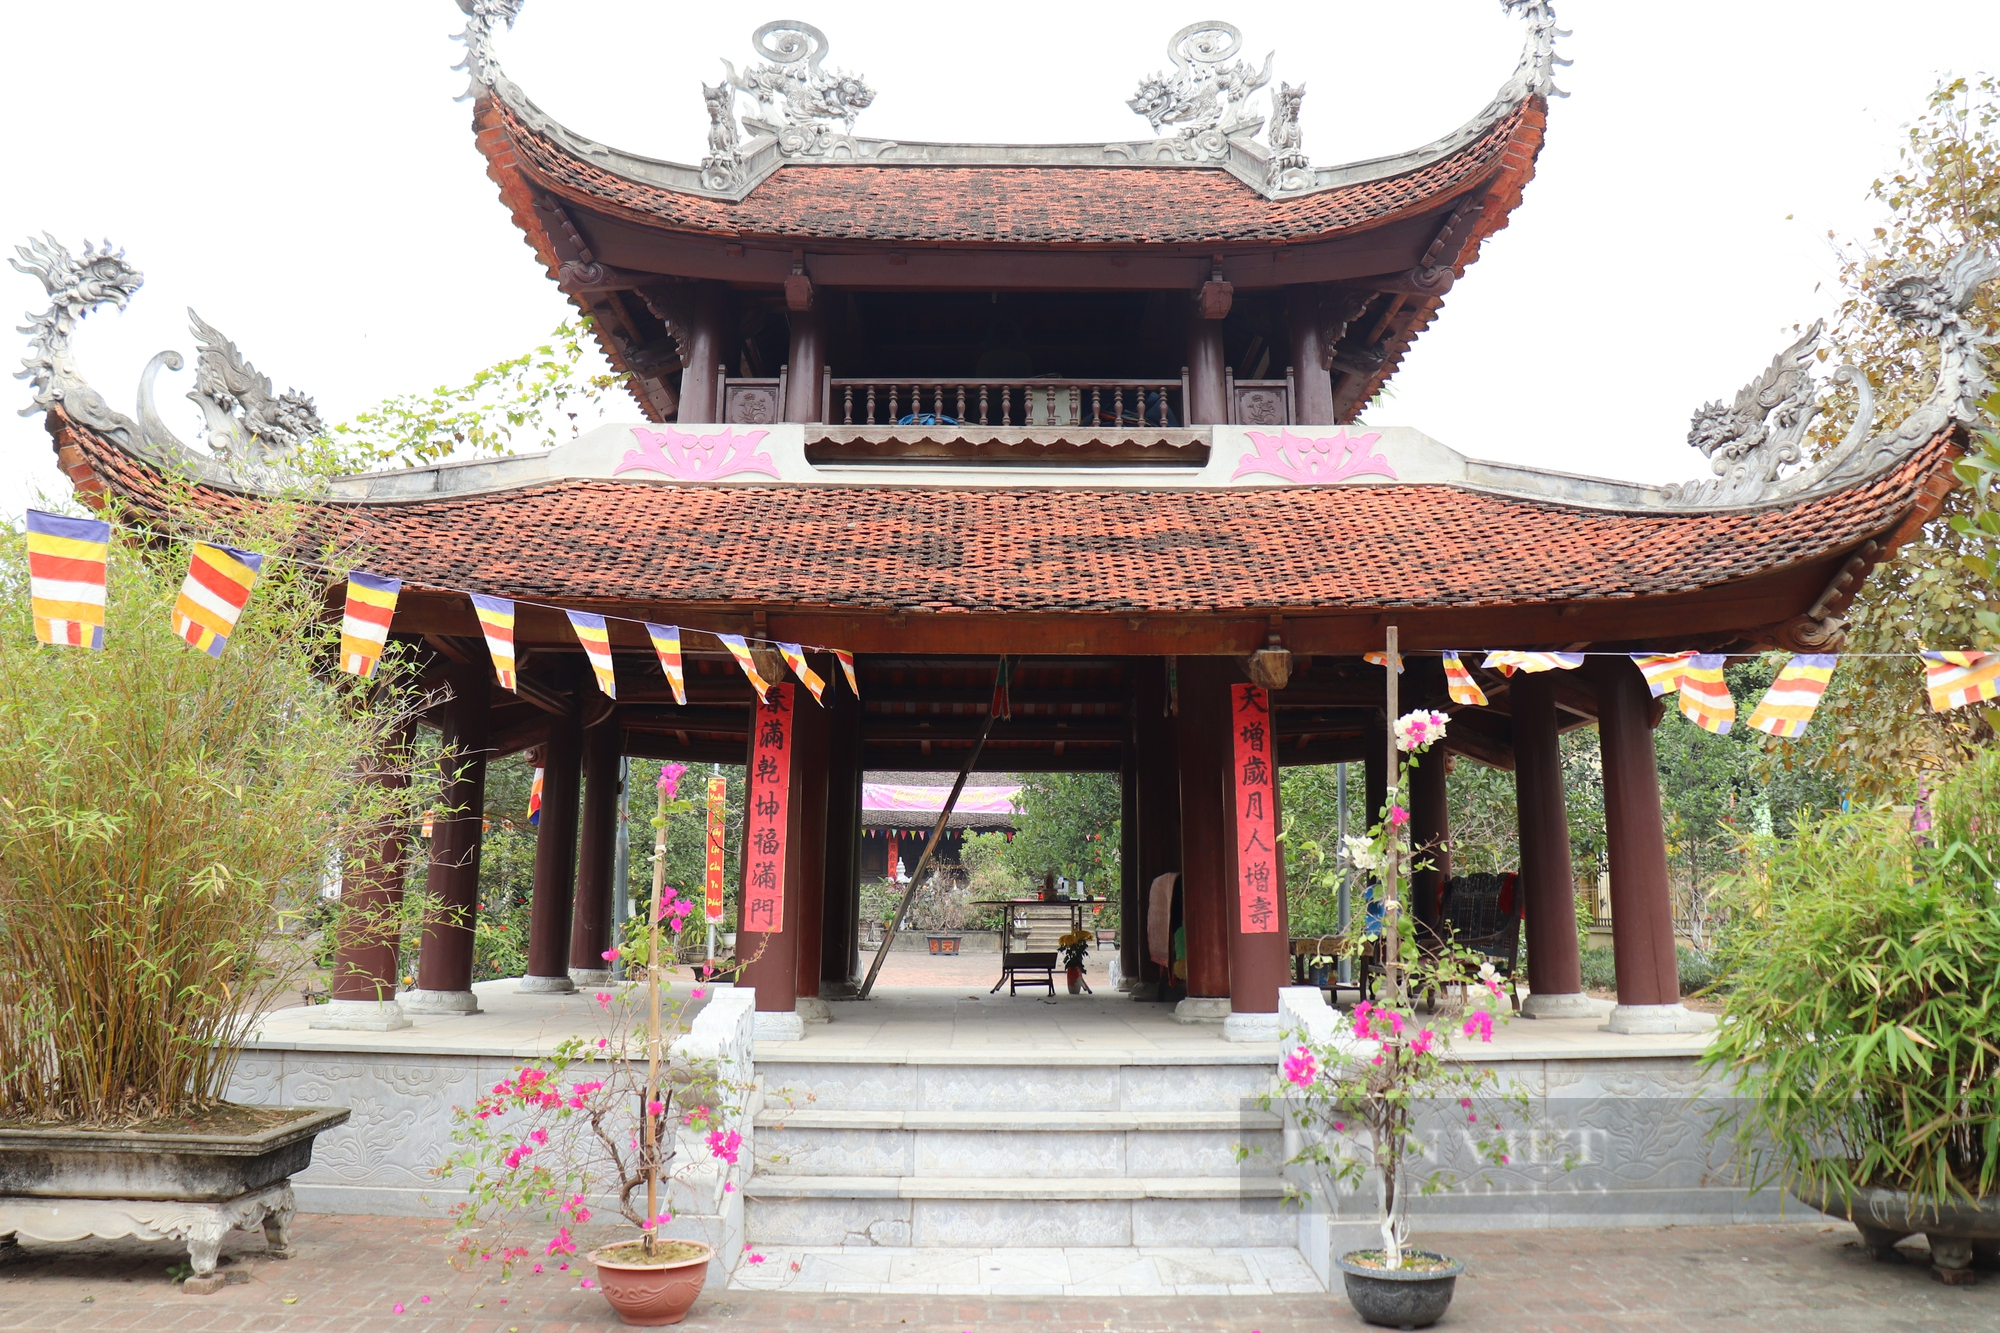 Kiến trúc đặc biệt bên trong ngôi chùa cổ ở Hà Nội - Ảnh 3.